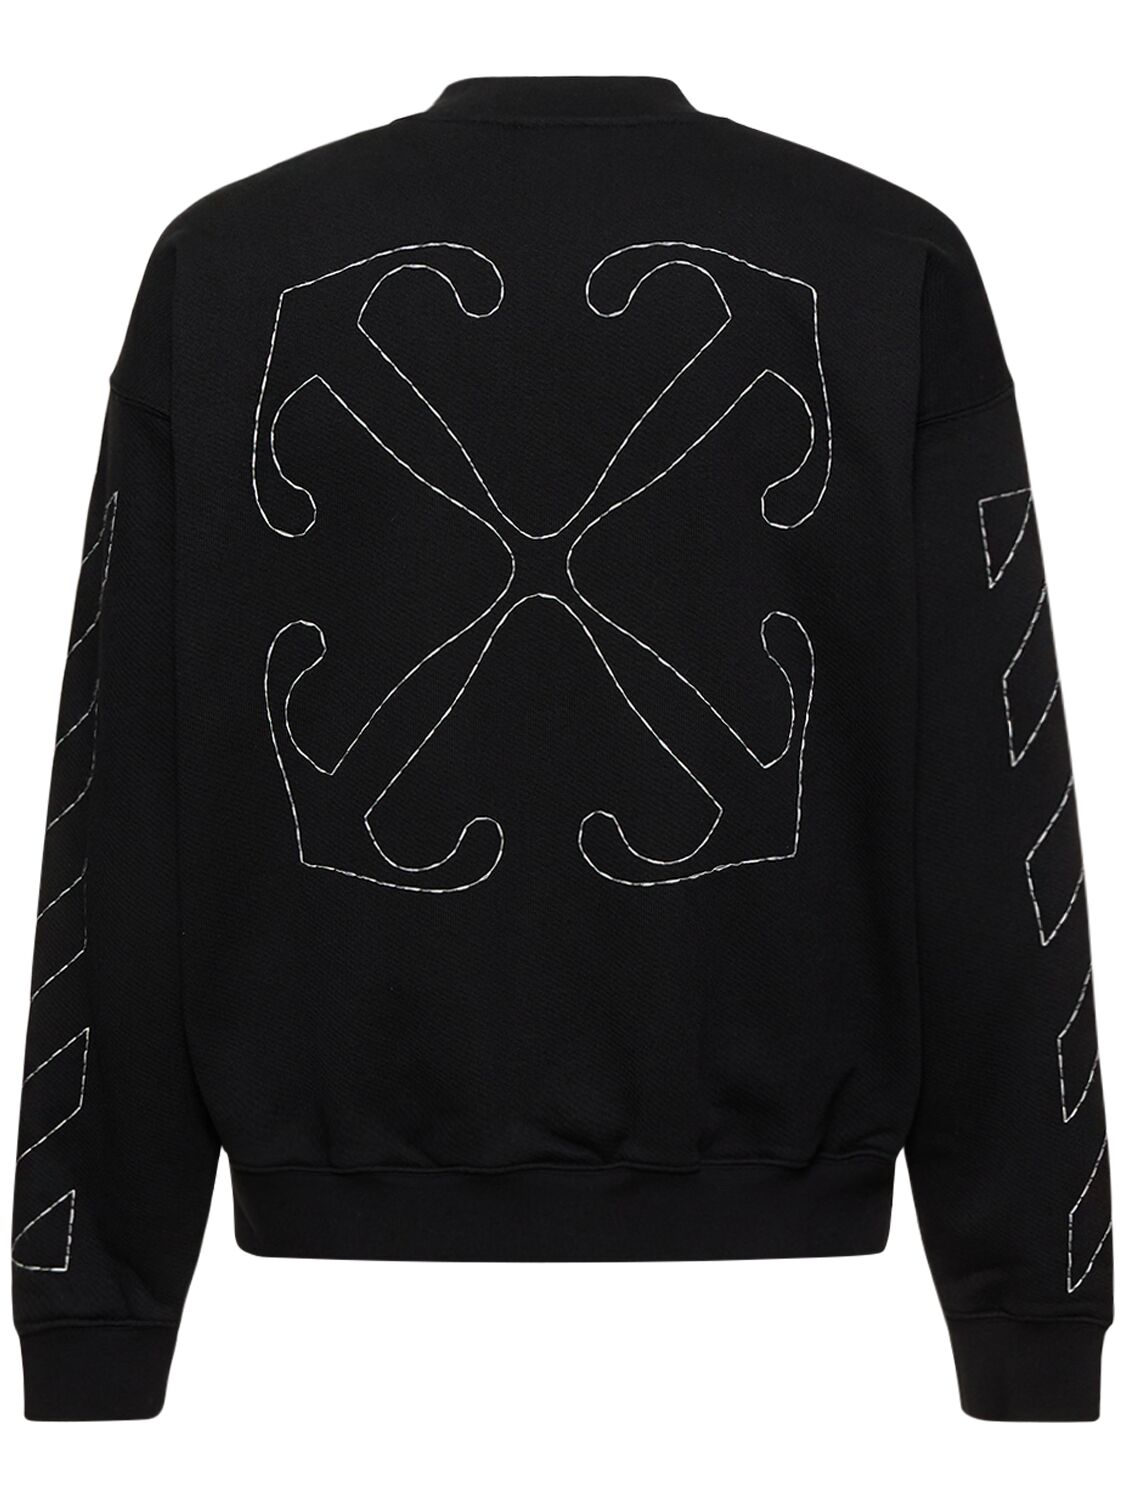 Shop Off-white Off Stitch Skate Cotton Sweatshirt In Black